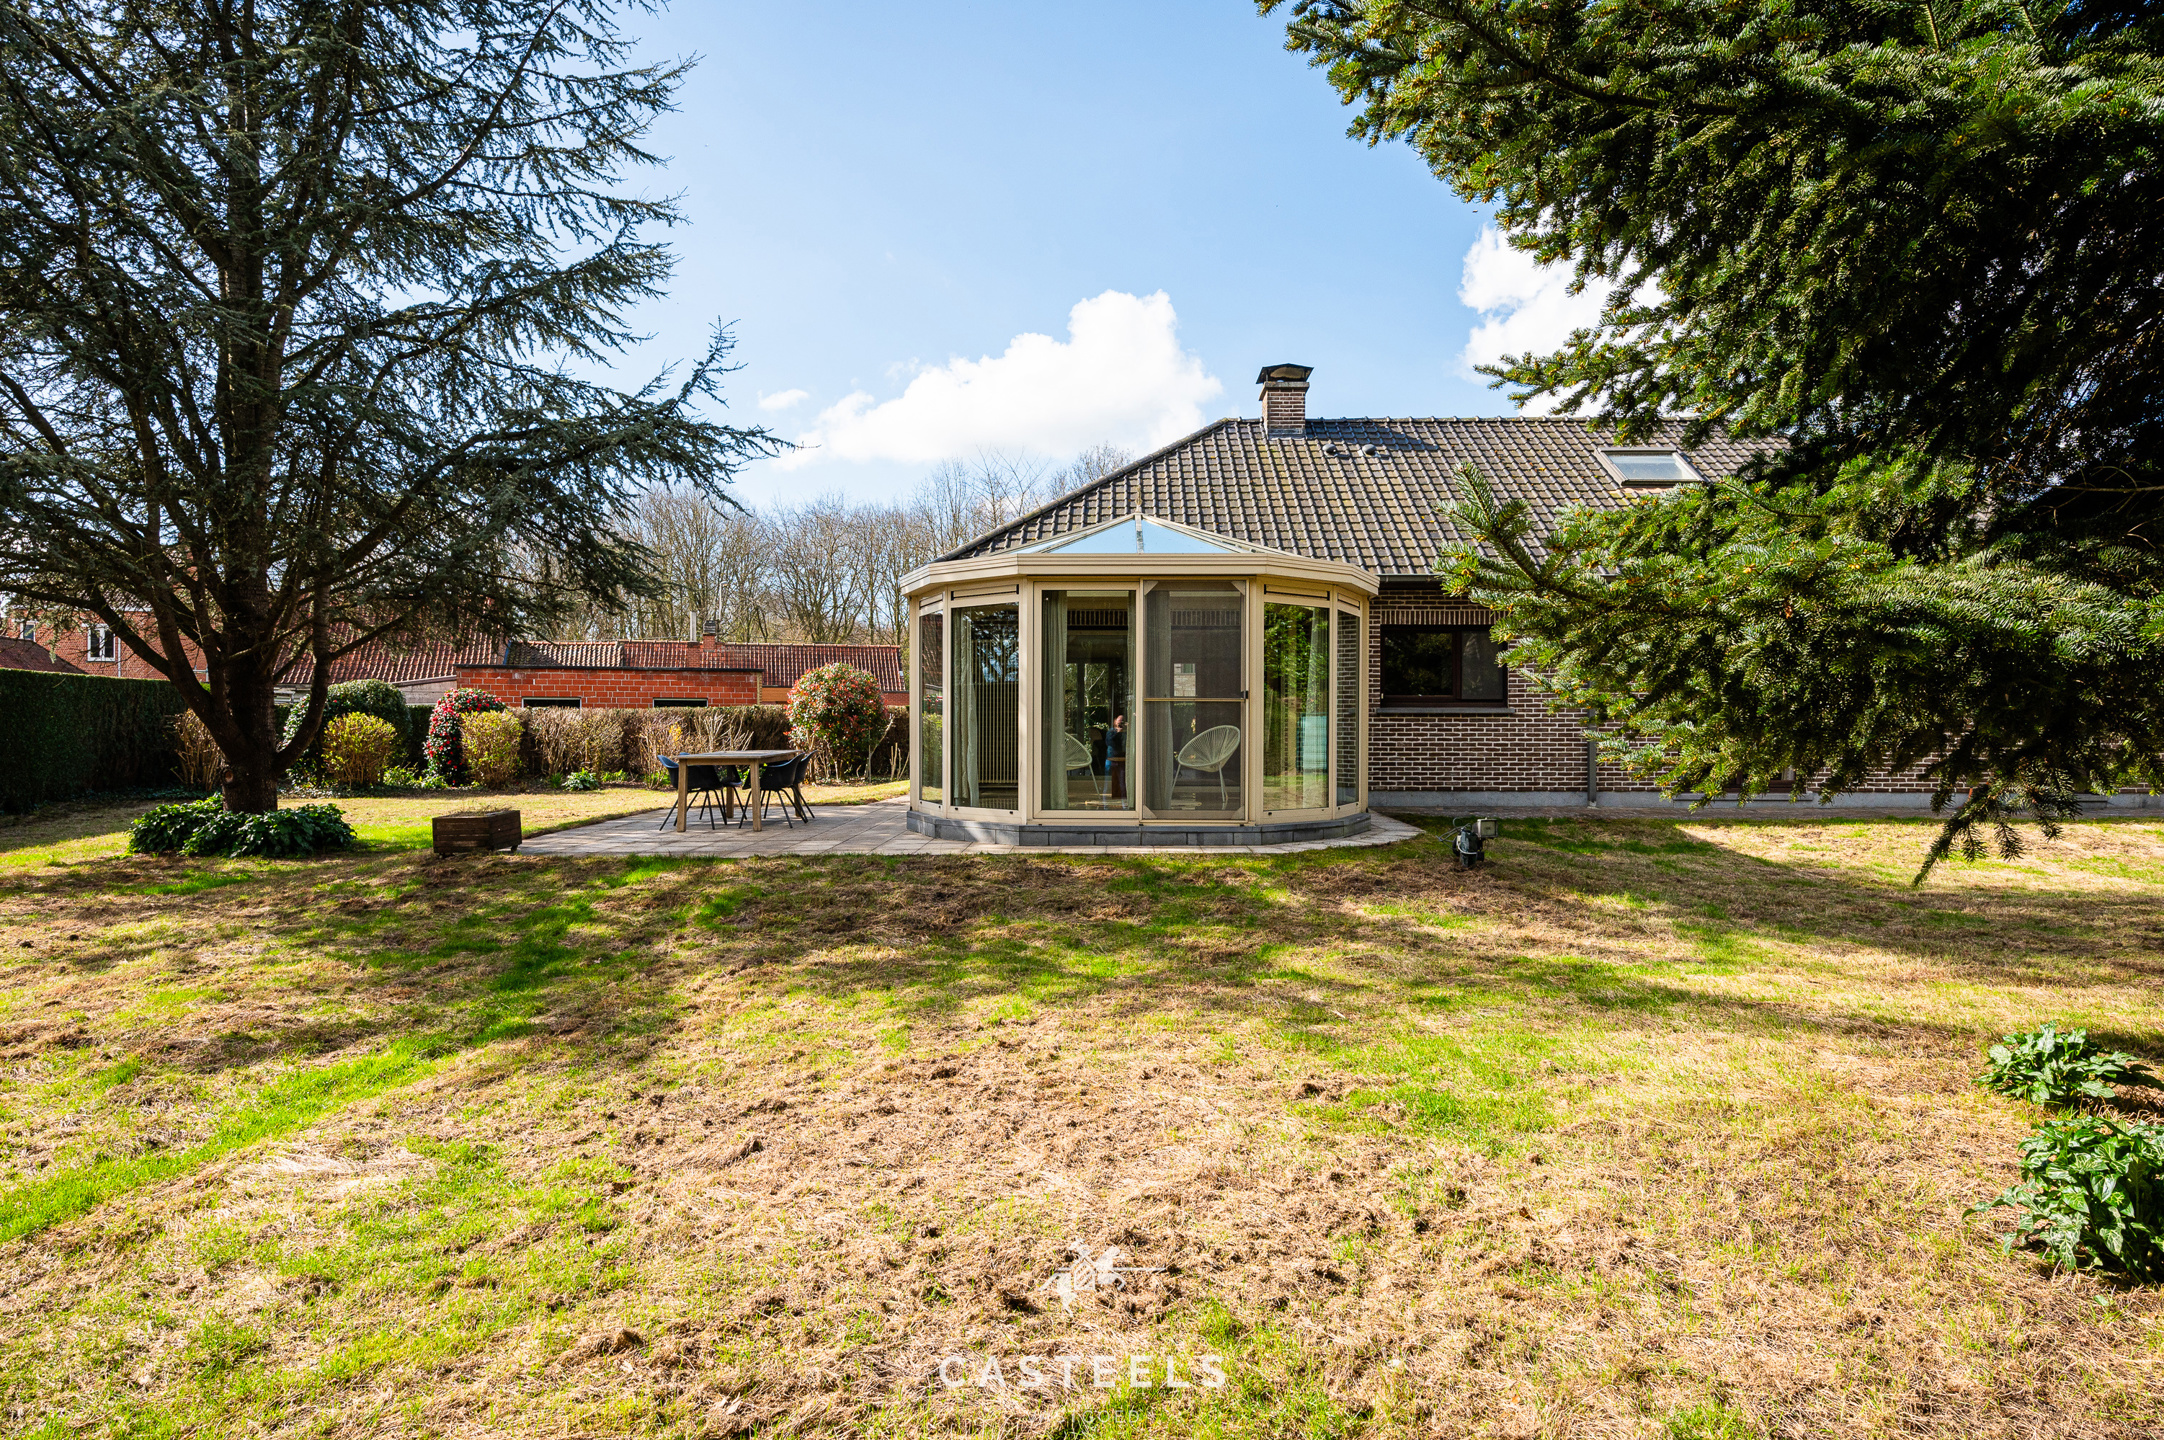 Afbeelding Villa in groene omgeving te Vinderhoute te koop - Casteels Vastgoed